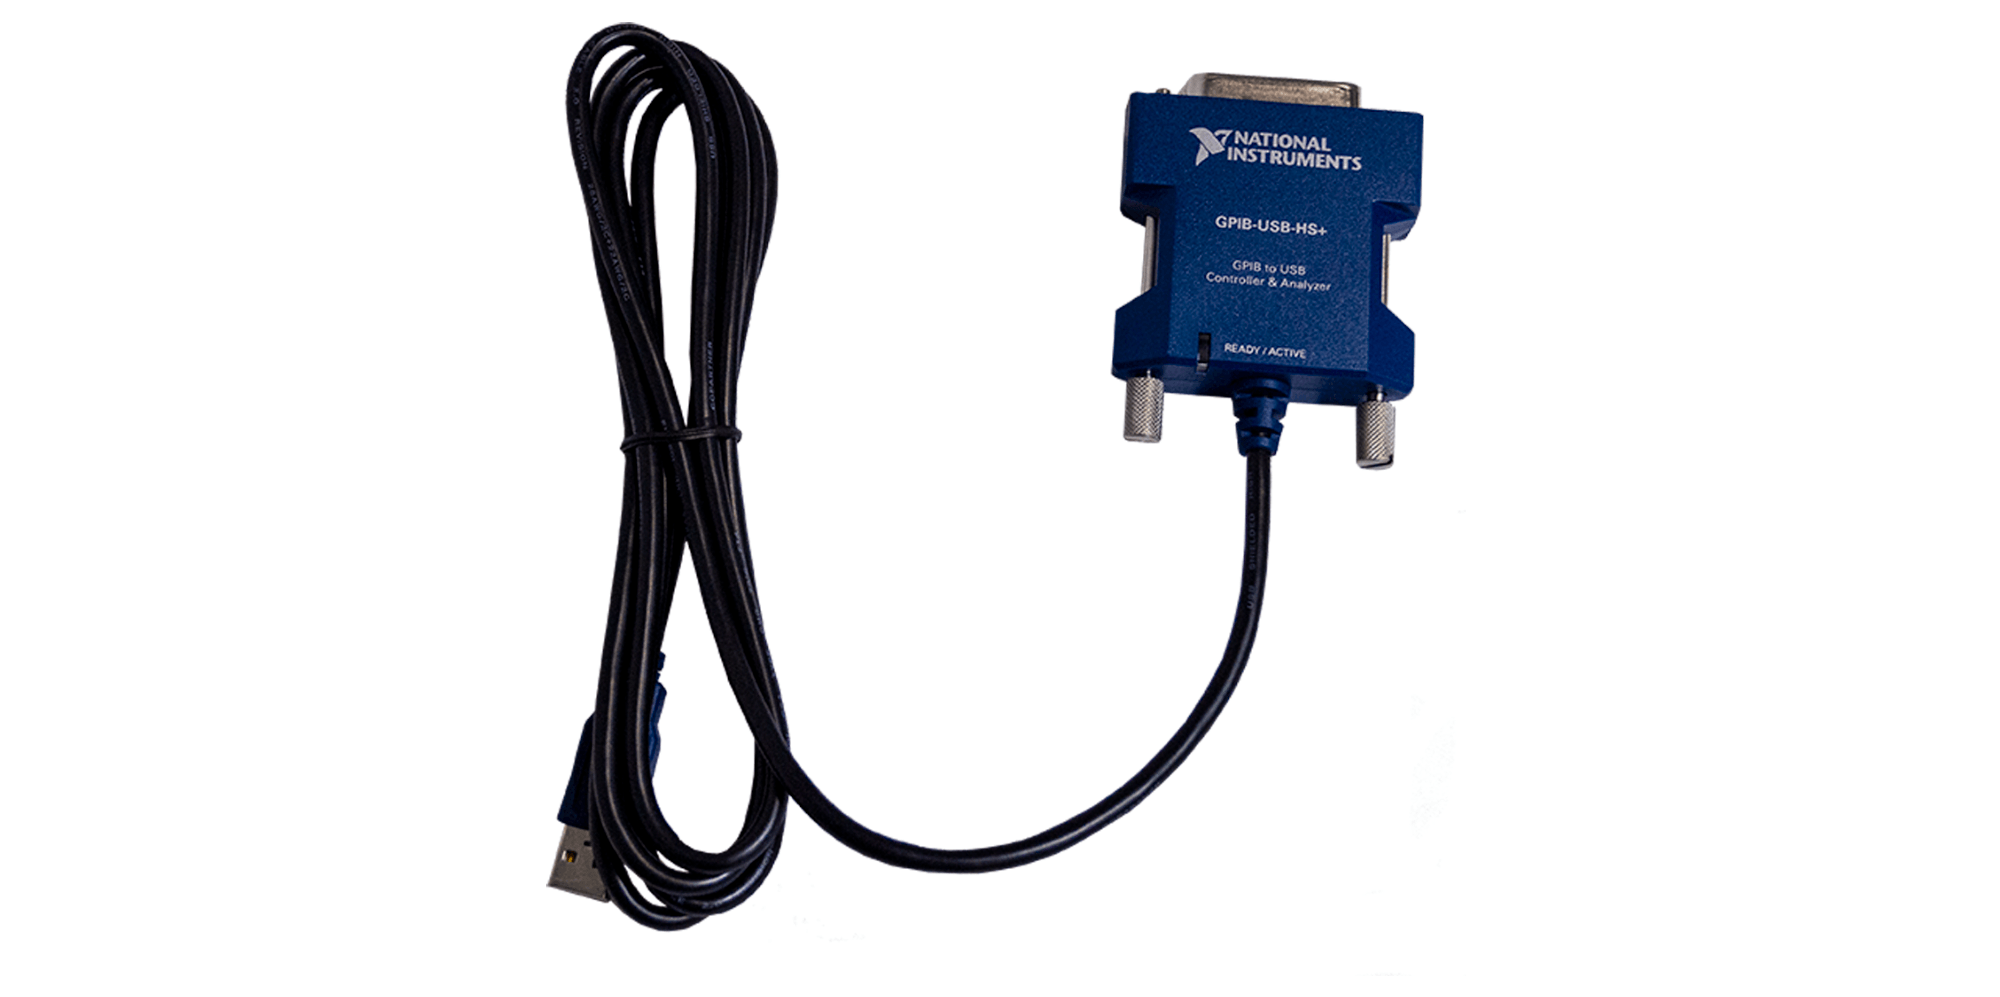 期間限定特価品 NI GPIB-USB-HS USB-GPIBコントローラ PC周辺機器